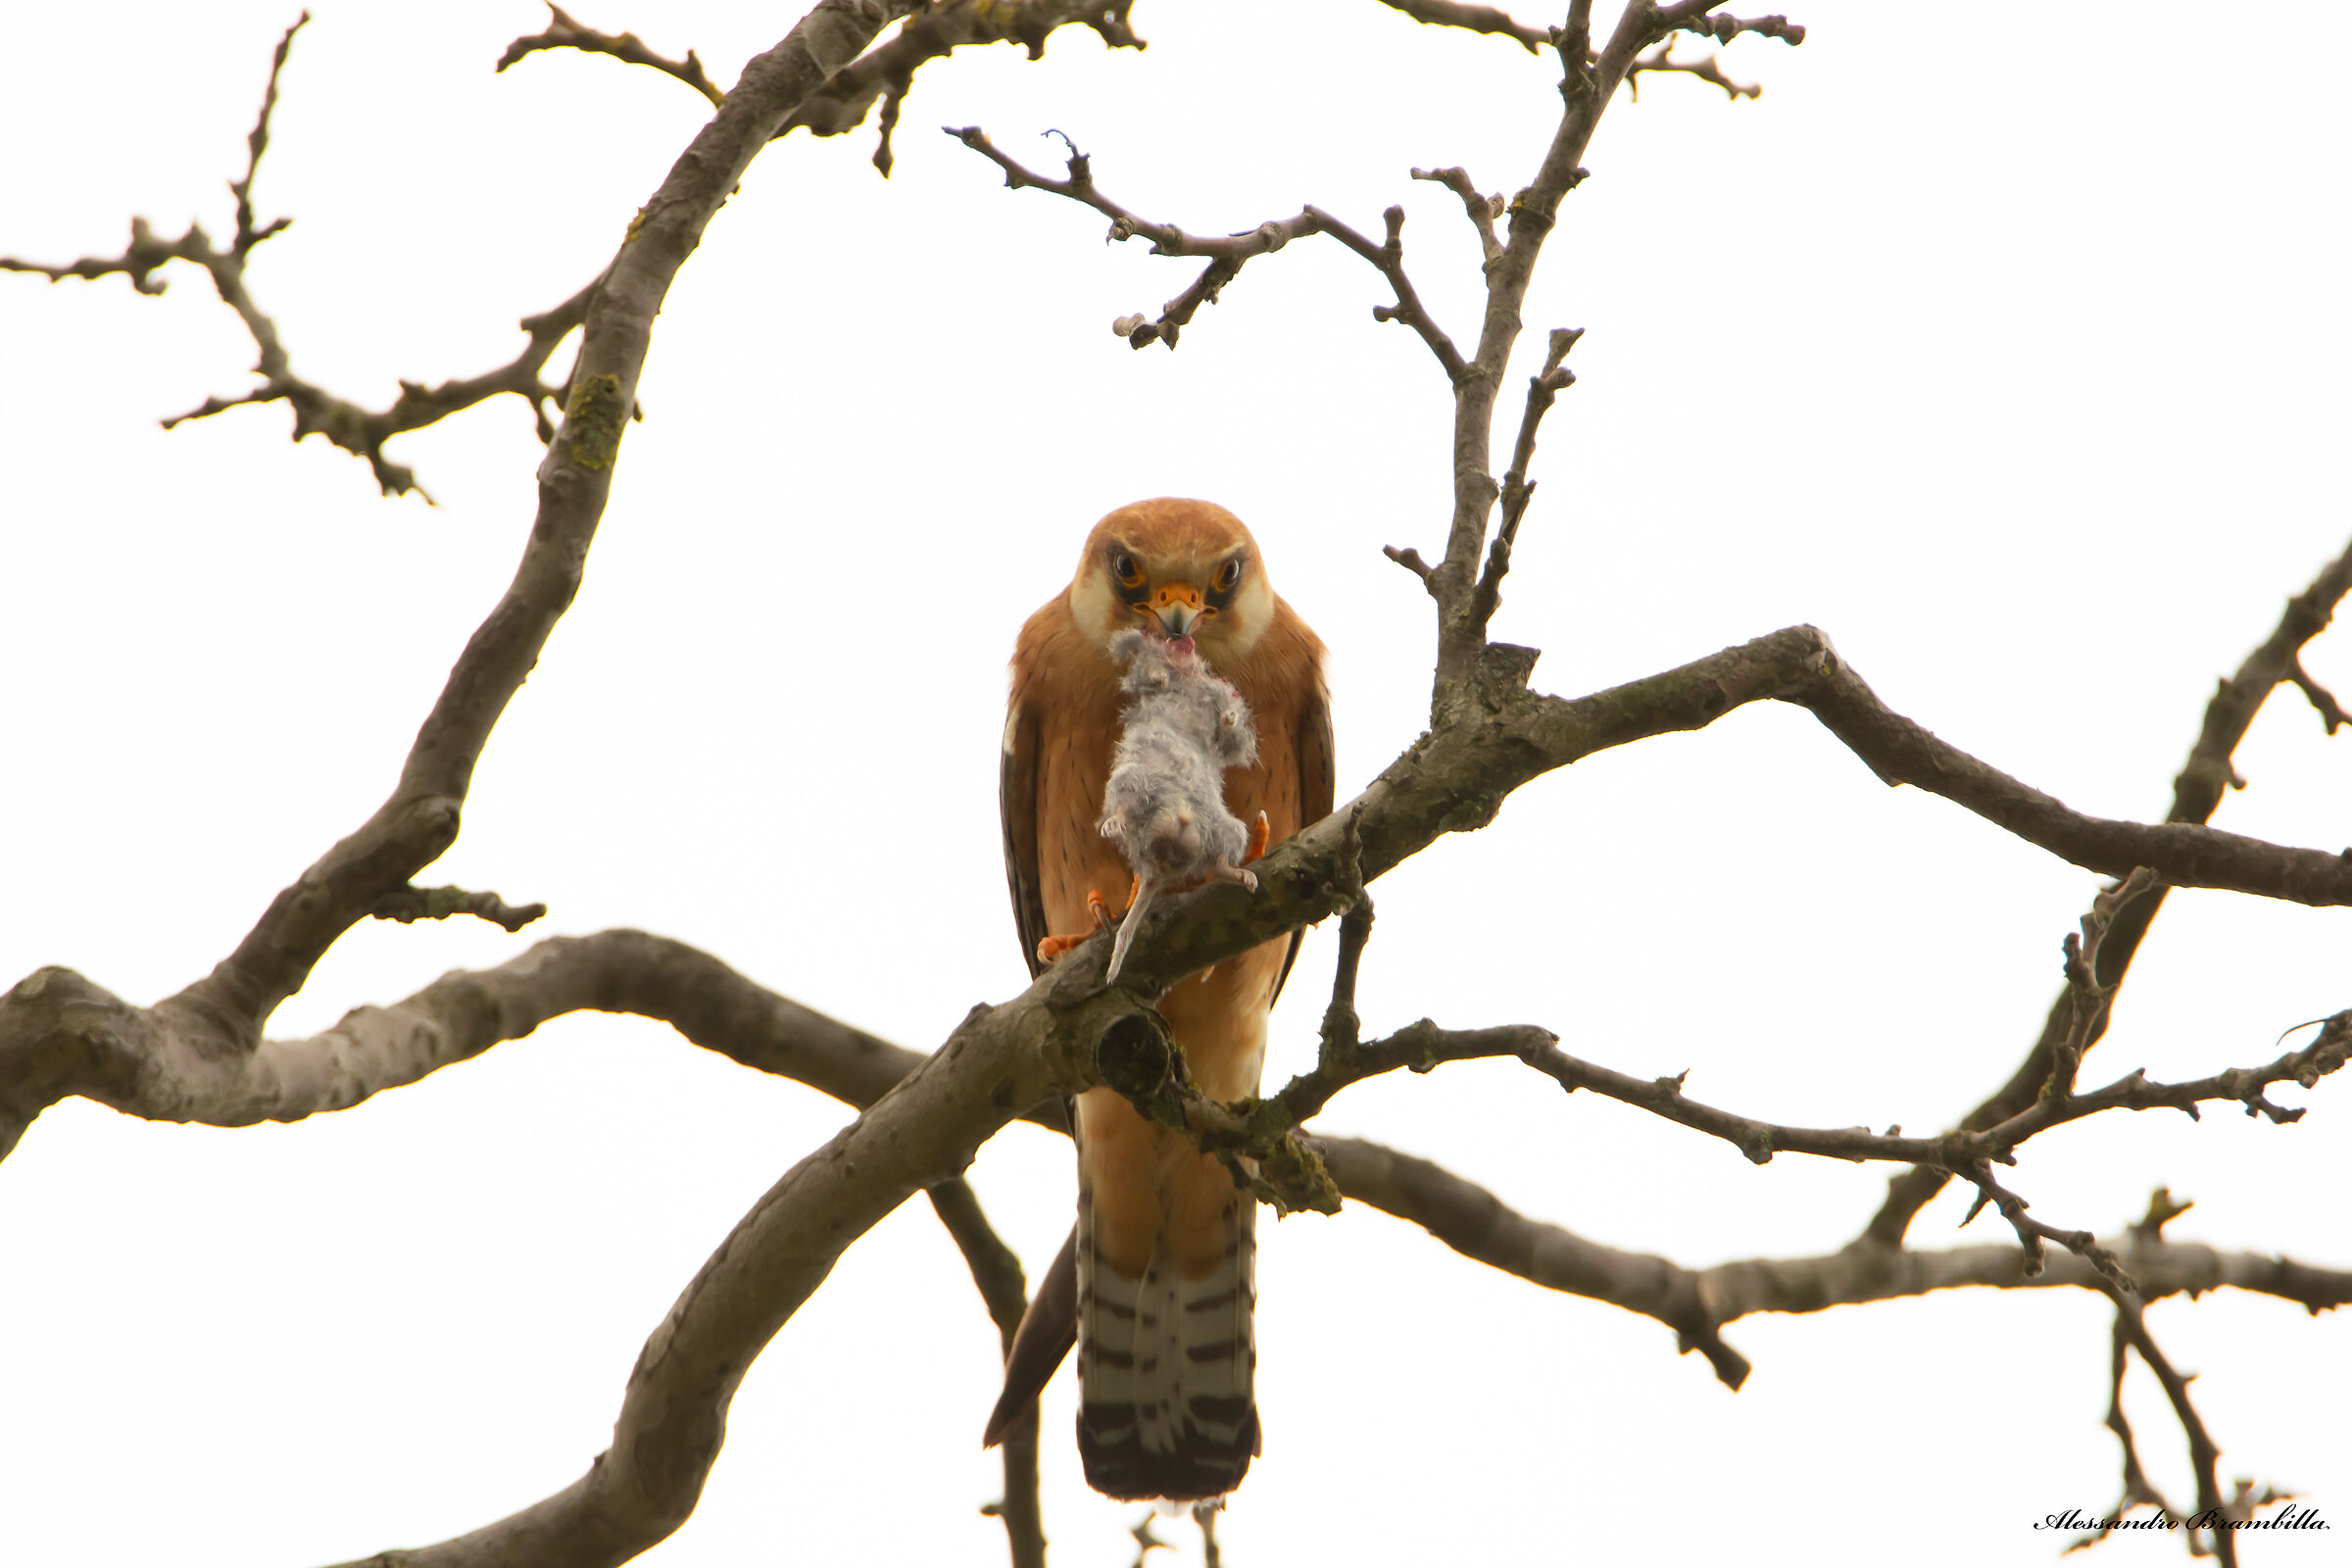 Cuckoo hawk with prey...